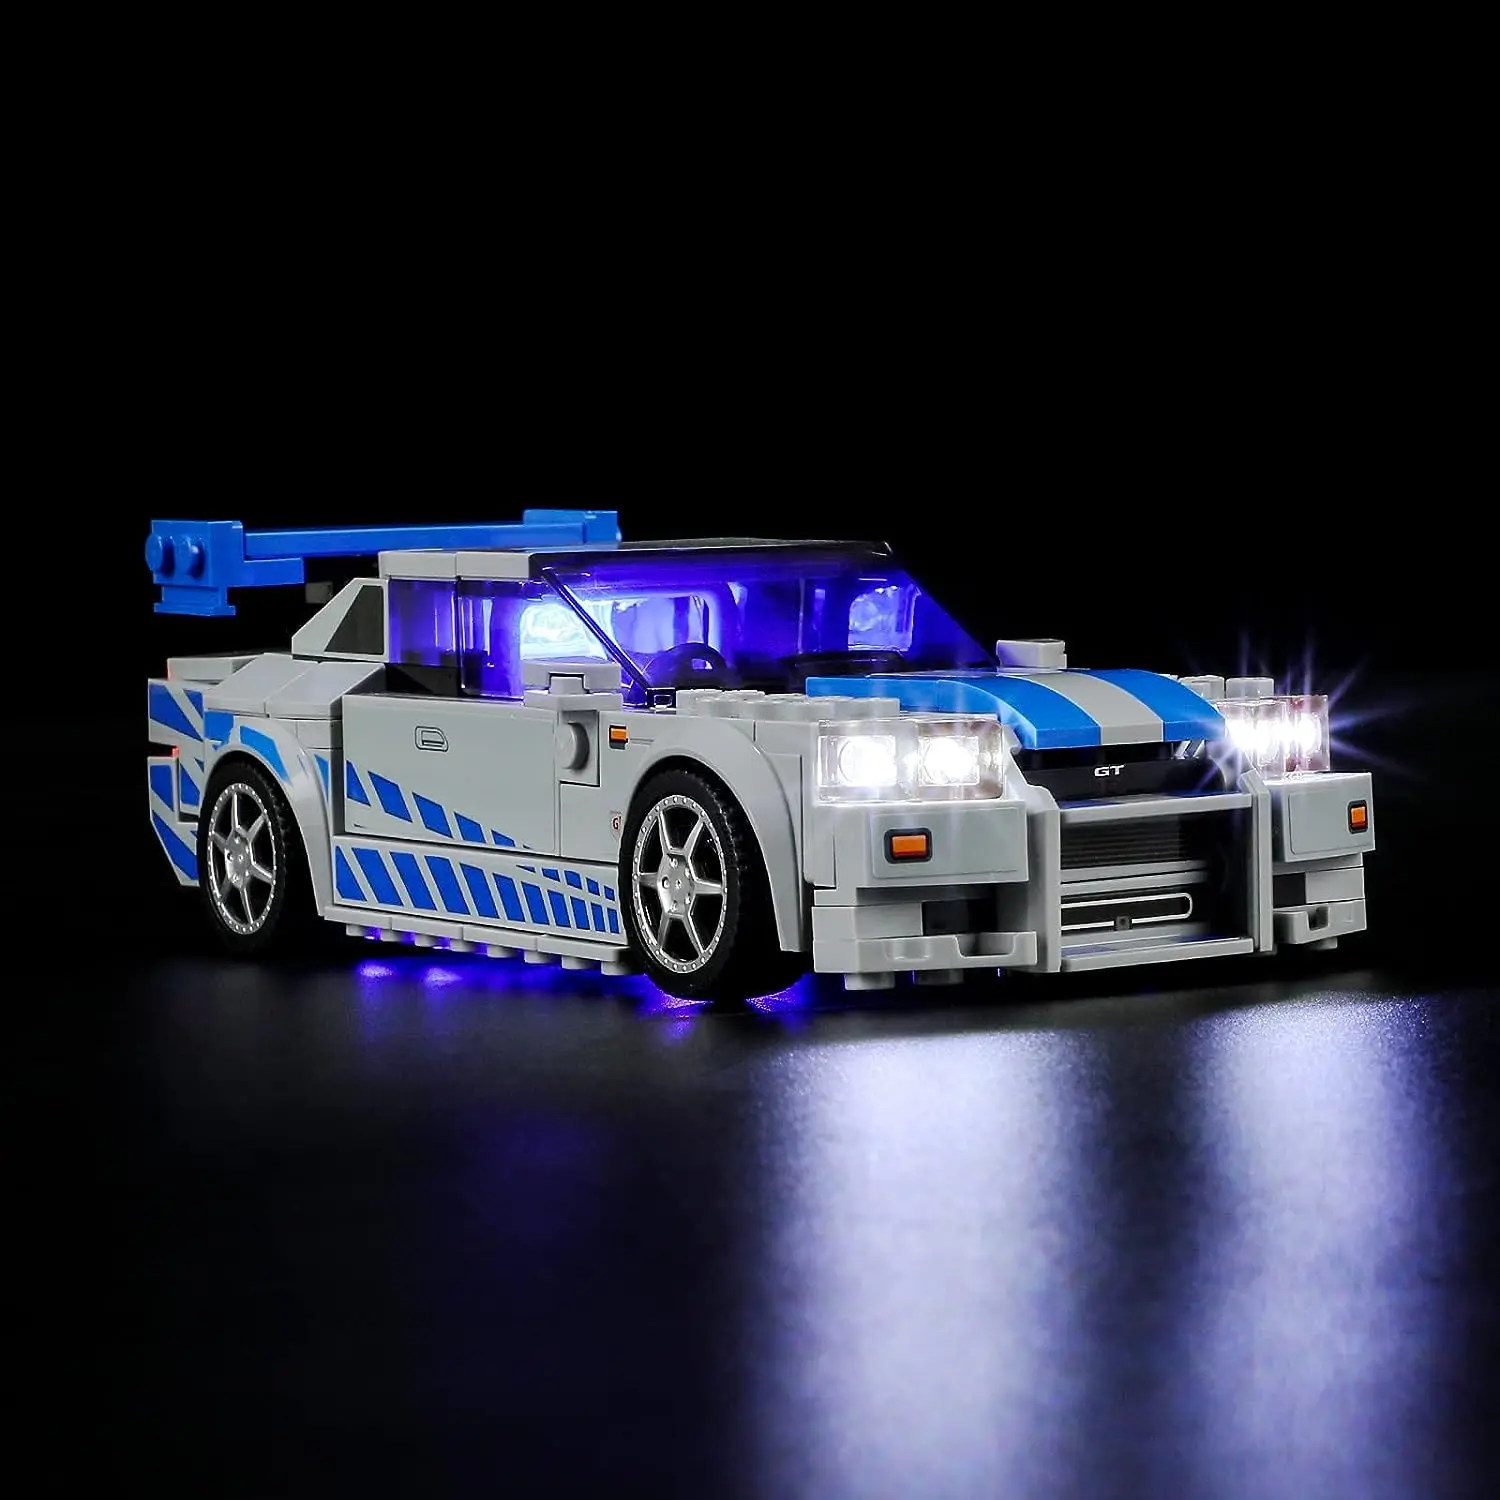 Hprosper LED Fény 76917 Sebesség 2 Fast 2 Furious Nissan Skyline GT-R (R34) Dekorációs Lámpa (építőkövei Nem Tartalmazza)2